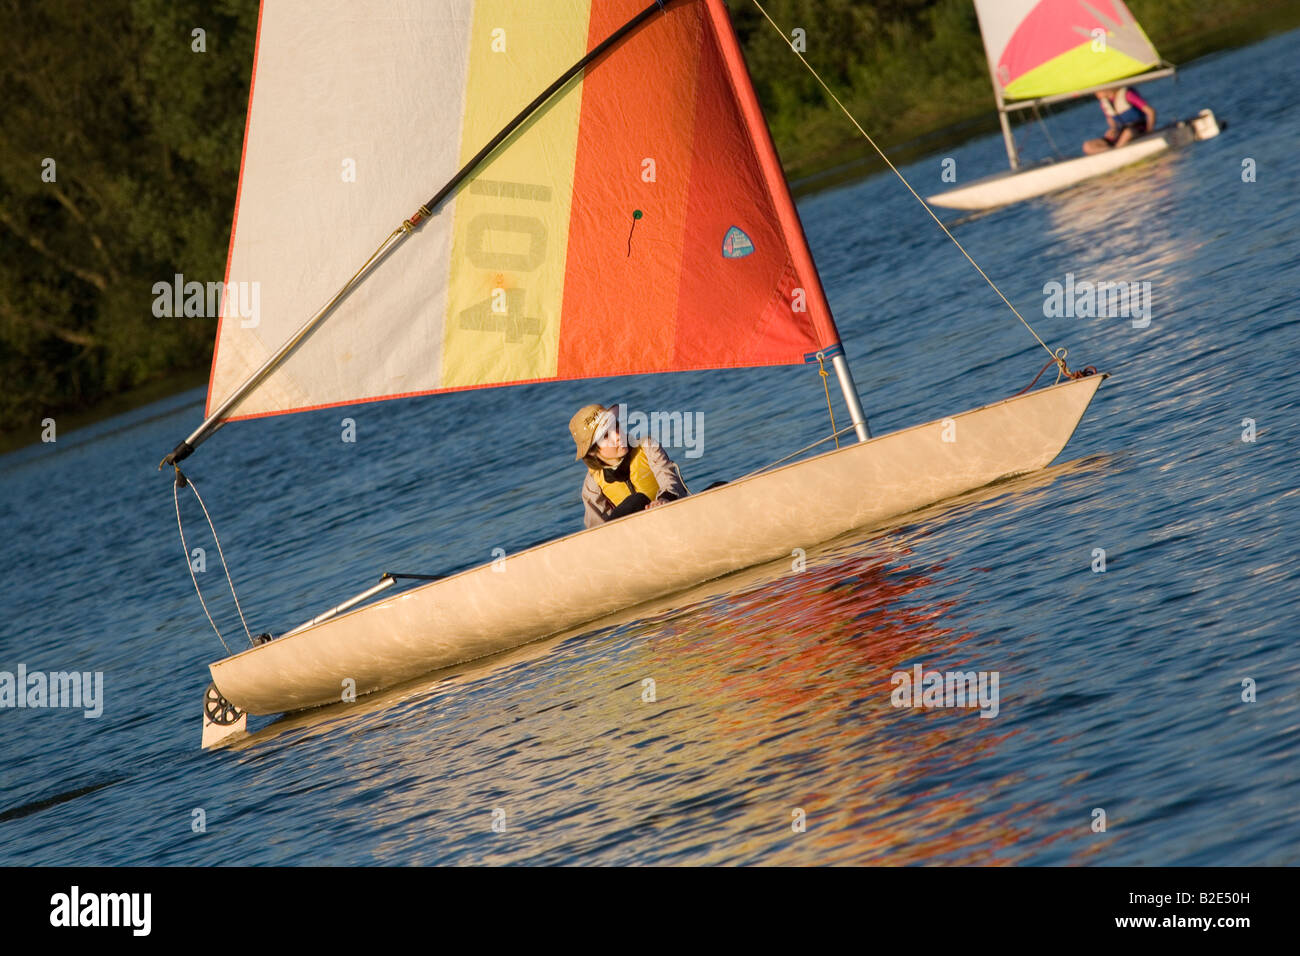 Un adolescent sur leur yacht sails lacs Lackford, Lackford, Suffolk Banque D'Images